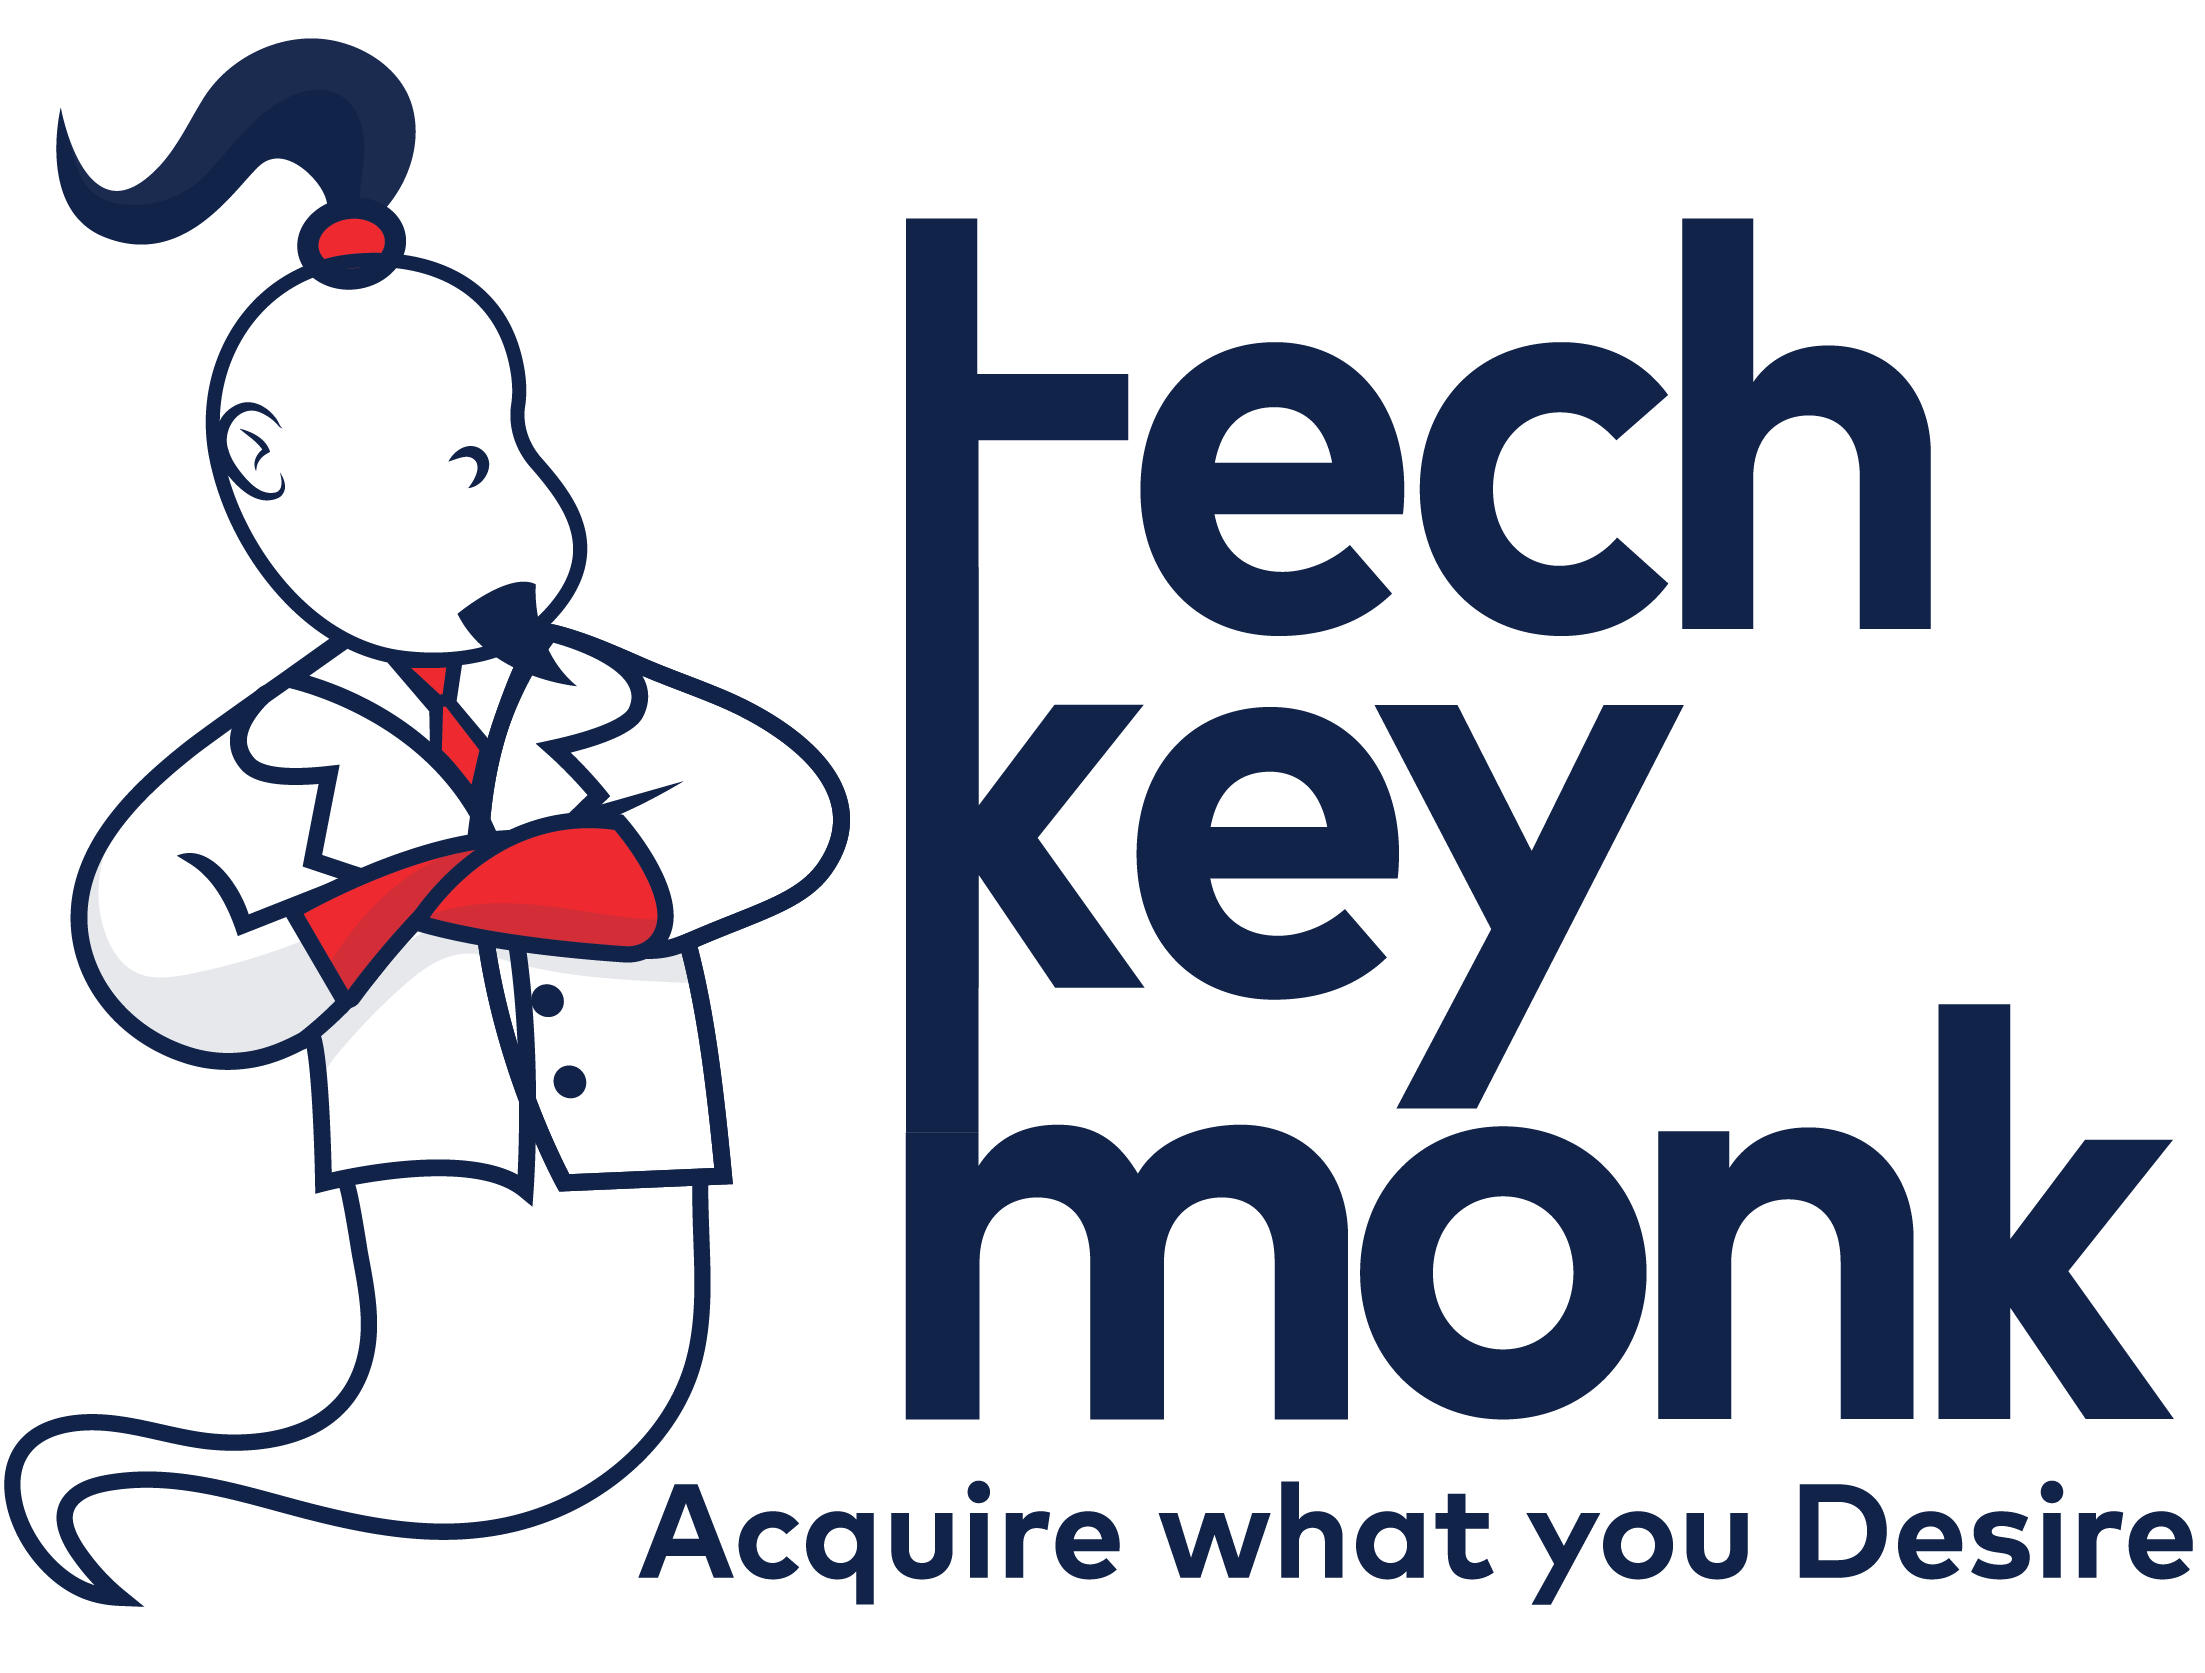 TechKey Monk